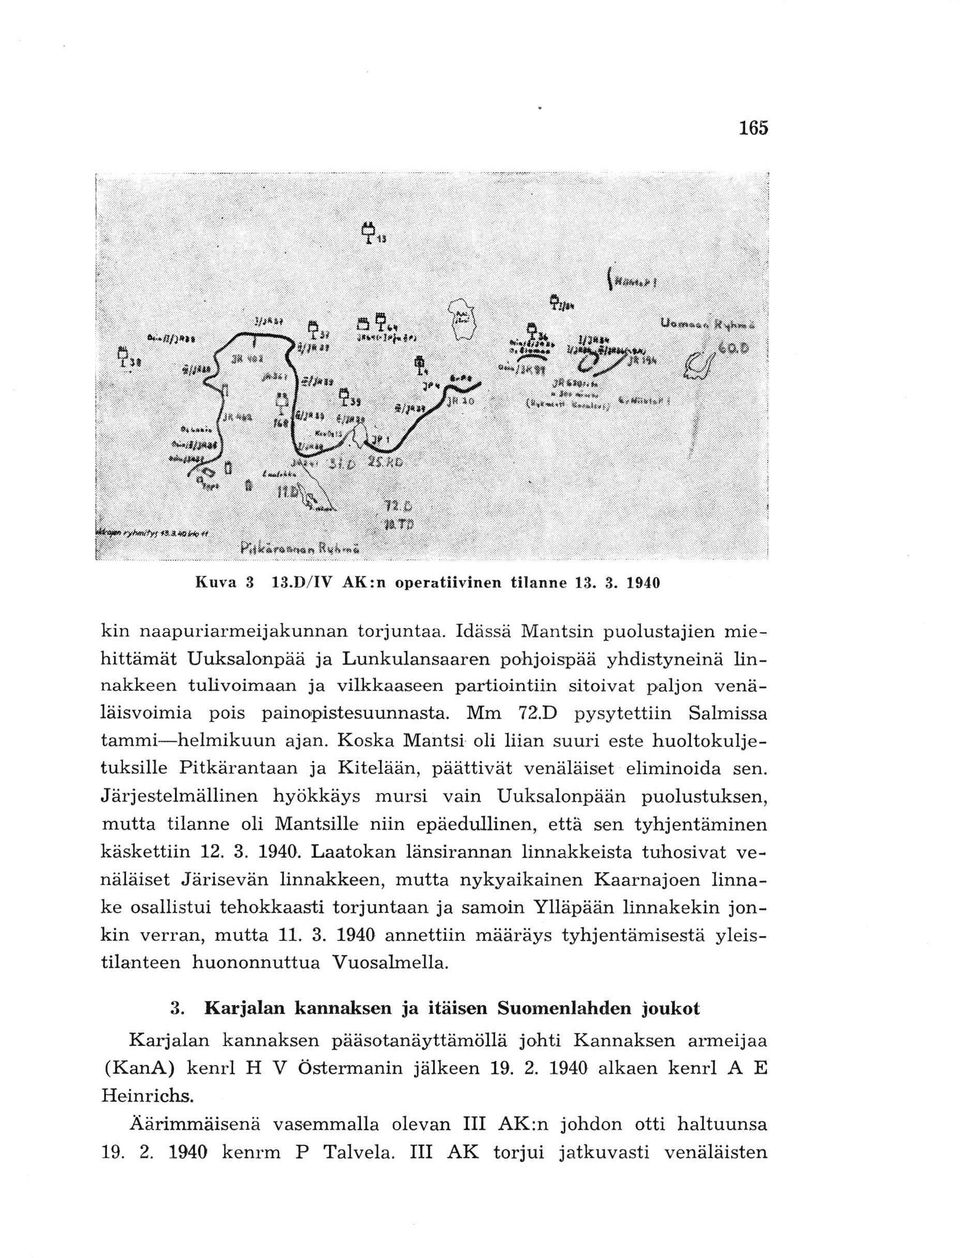 painopistesuunnasta. Mm 72.D pysytettiin Salmissa tammi-helmikuun ajan. Koska Mantsi oli liian suuri este huoltokuljetuksille Pitkärantaan ja Kitelään, päättivät venäläiset eliminoida sen.